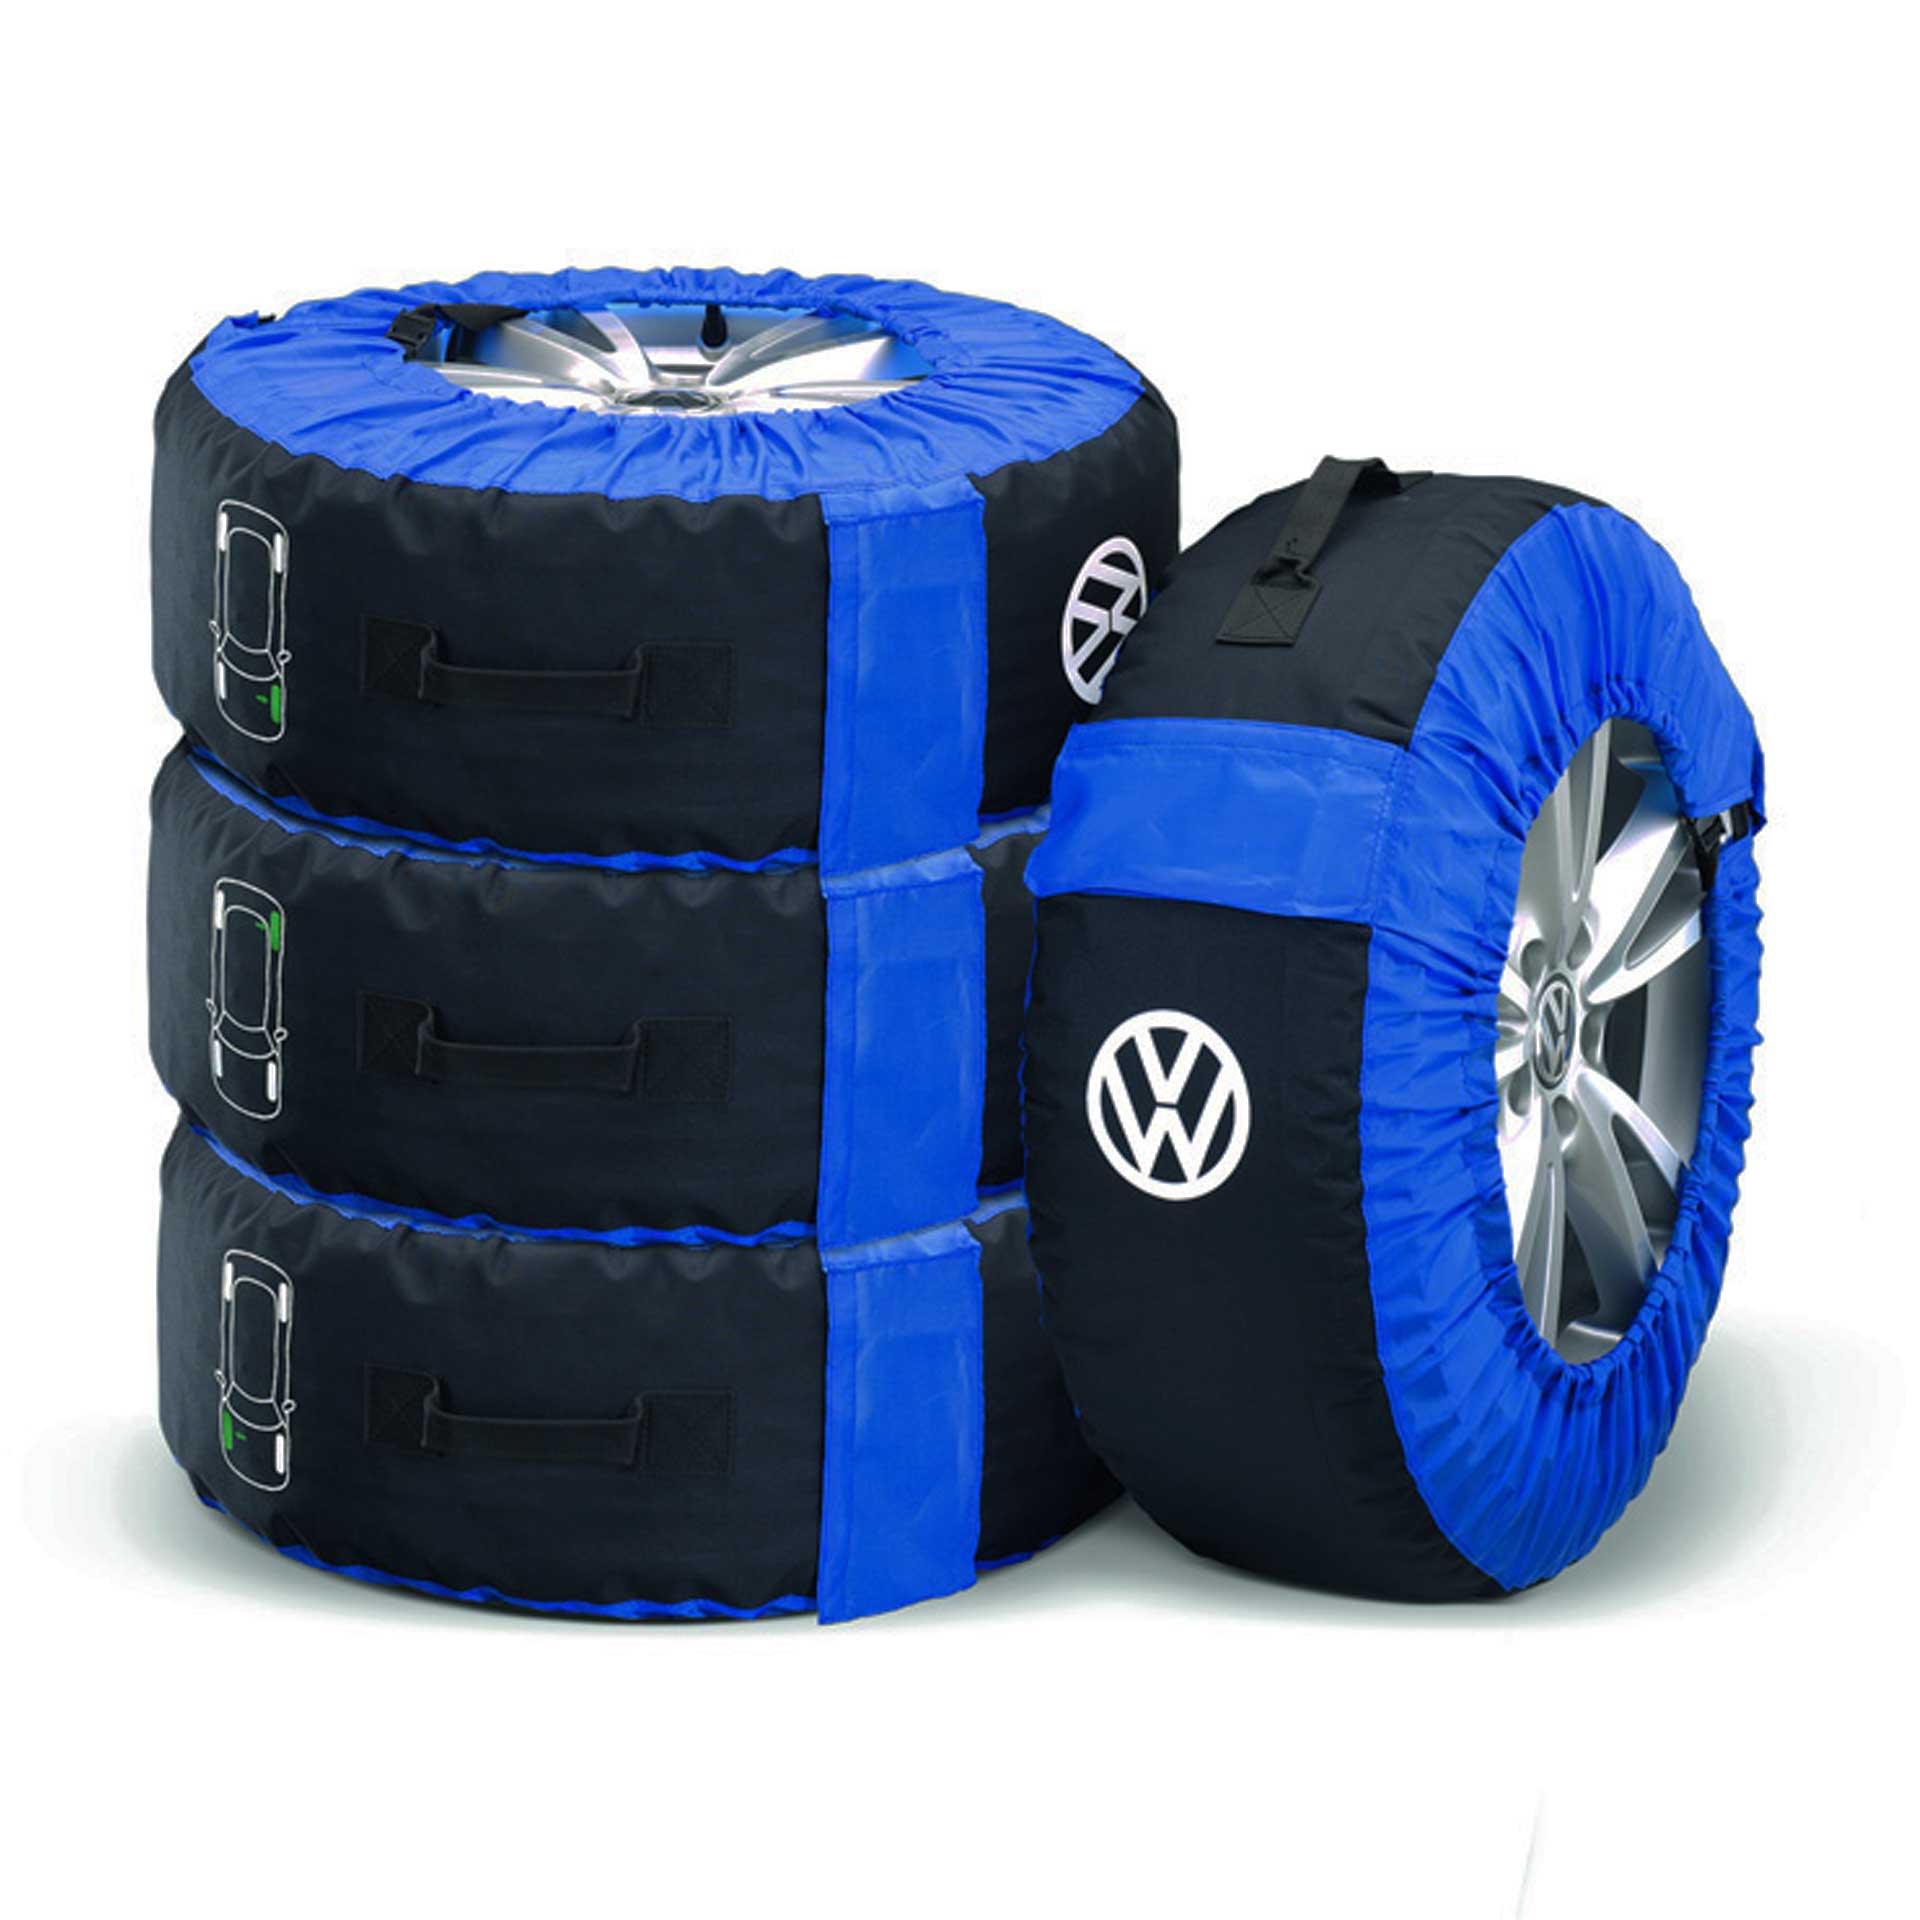 Volkswagen Reifentaschen bis 21 Zoll - 4 Stück für Kompletträder